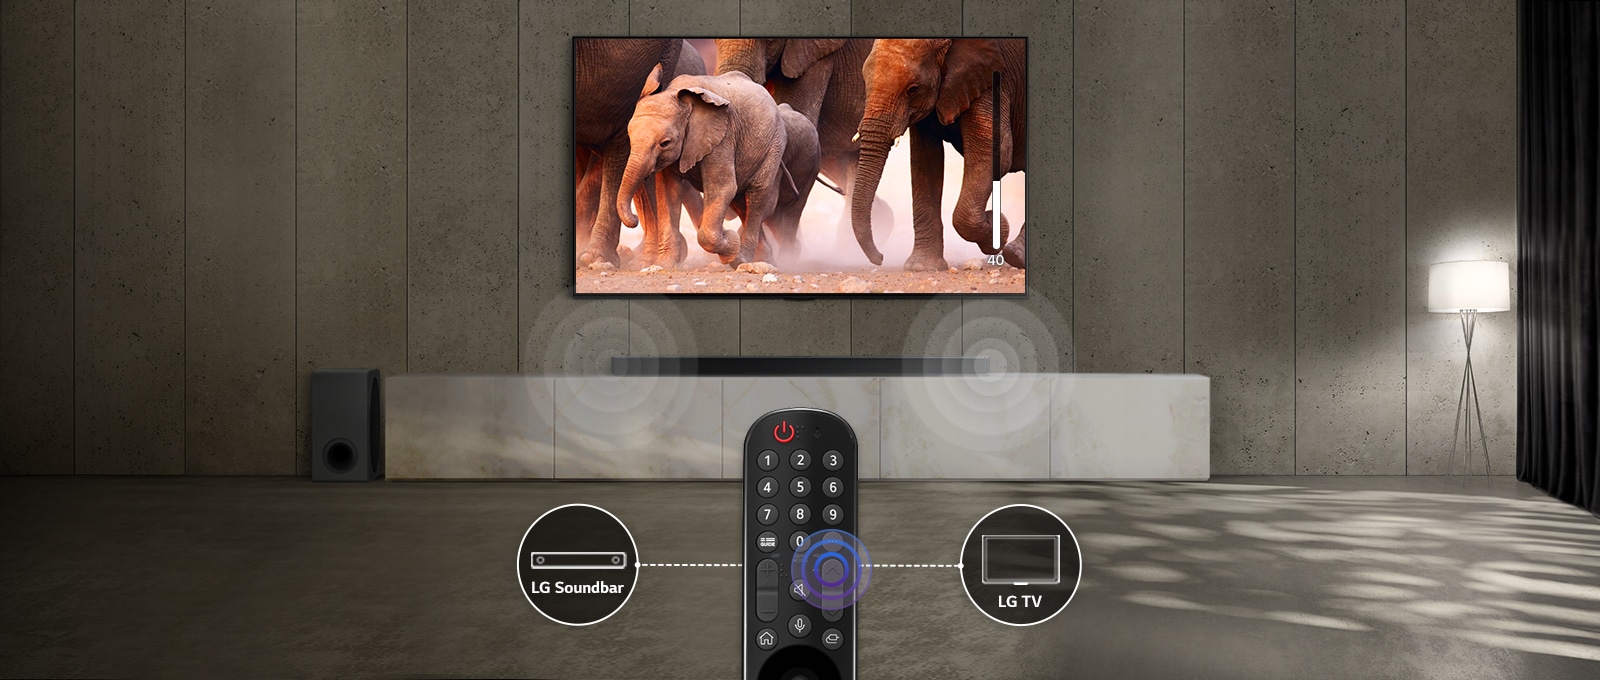 Un TV en una habitación con luces sutiles muestra imágenes de elefantes que pasan. Y, en la barra de sonido de debajo del TV, hay un efecto de sonido. En la parte inferior de la imagen, hay un mando a distancia de un TV, y los iconos de la barra de sonido y del TV están conectados de izquierda a derecha del mando a distancia.